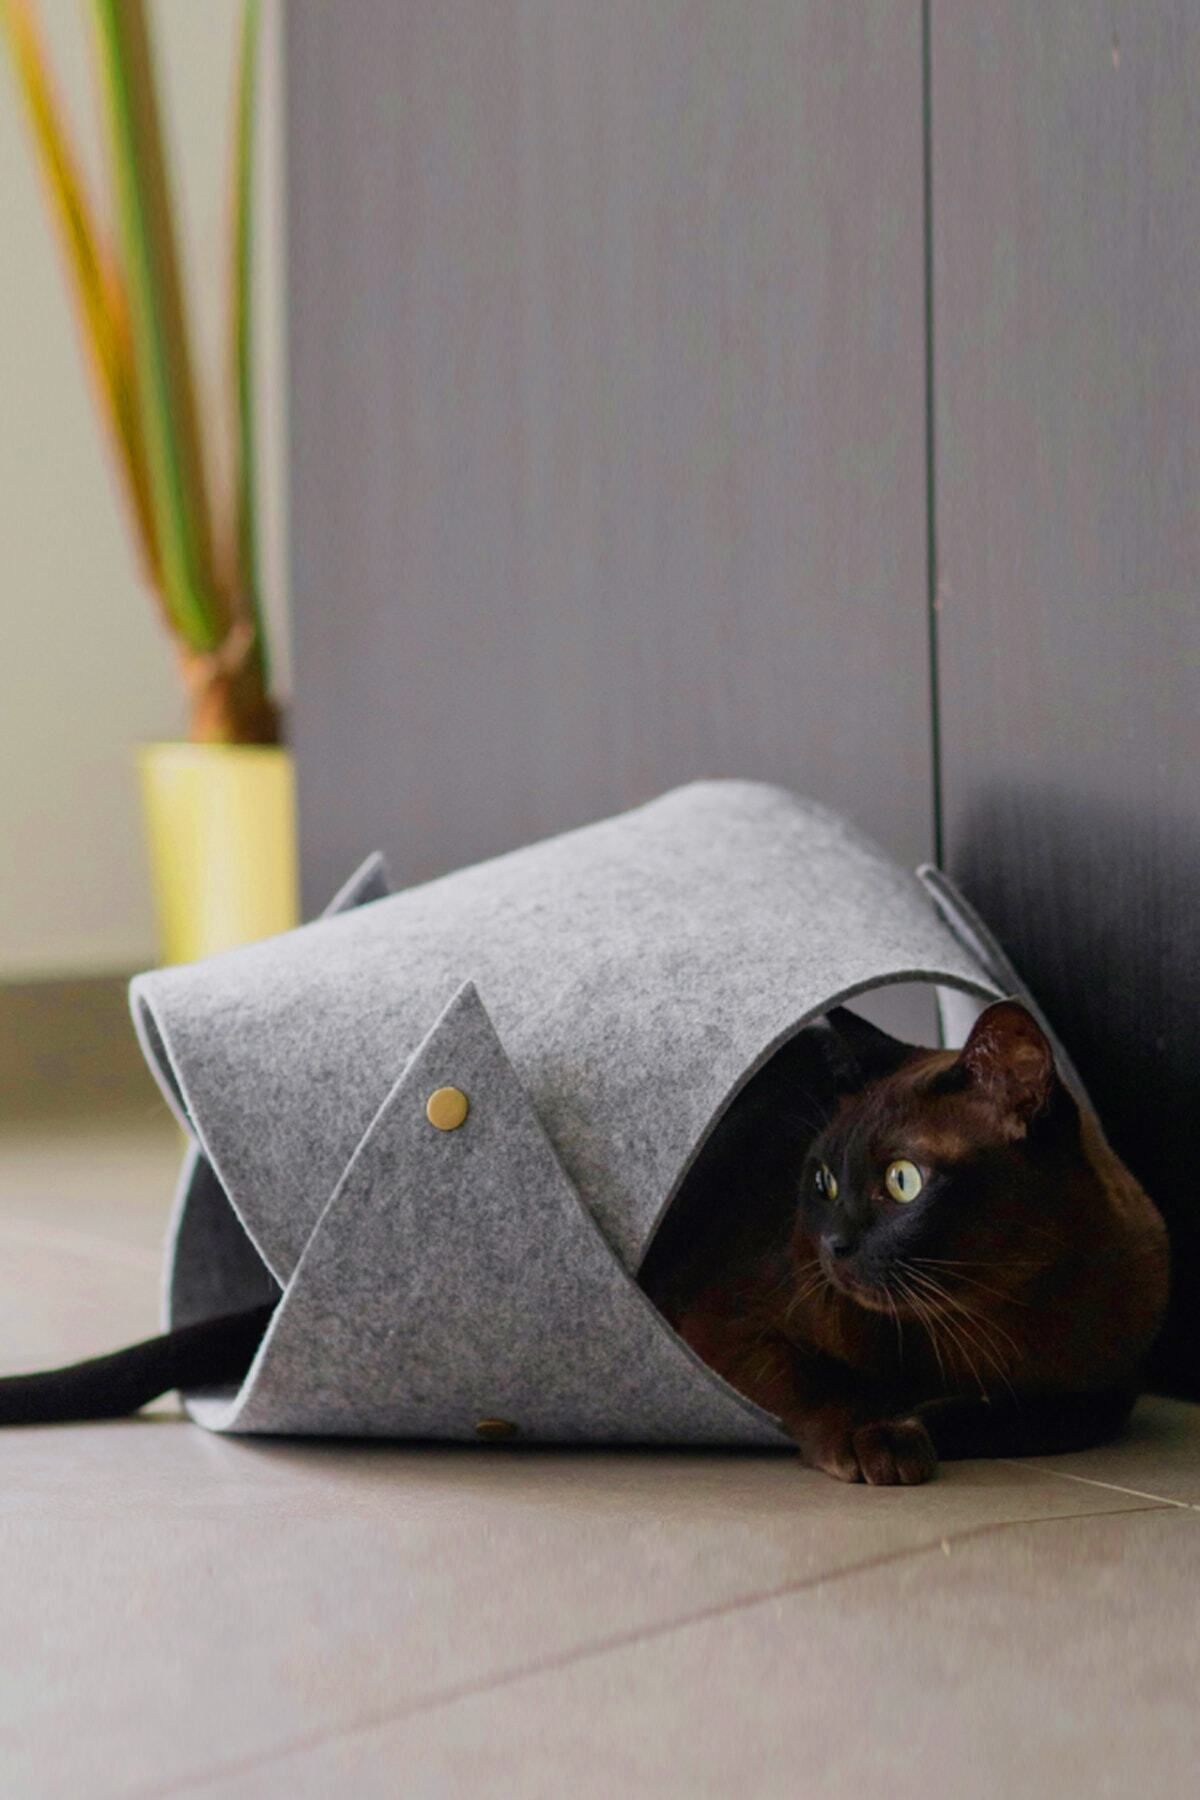 Bundera Toby Gri Kedi Tüneli Evcil Hayvan Oyuncağı Kedi Yatağı Yavru Yetişkin Kedi Oyun Evi Tünel